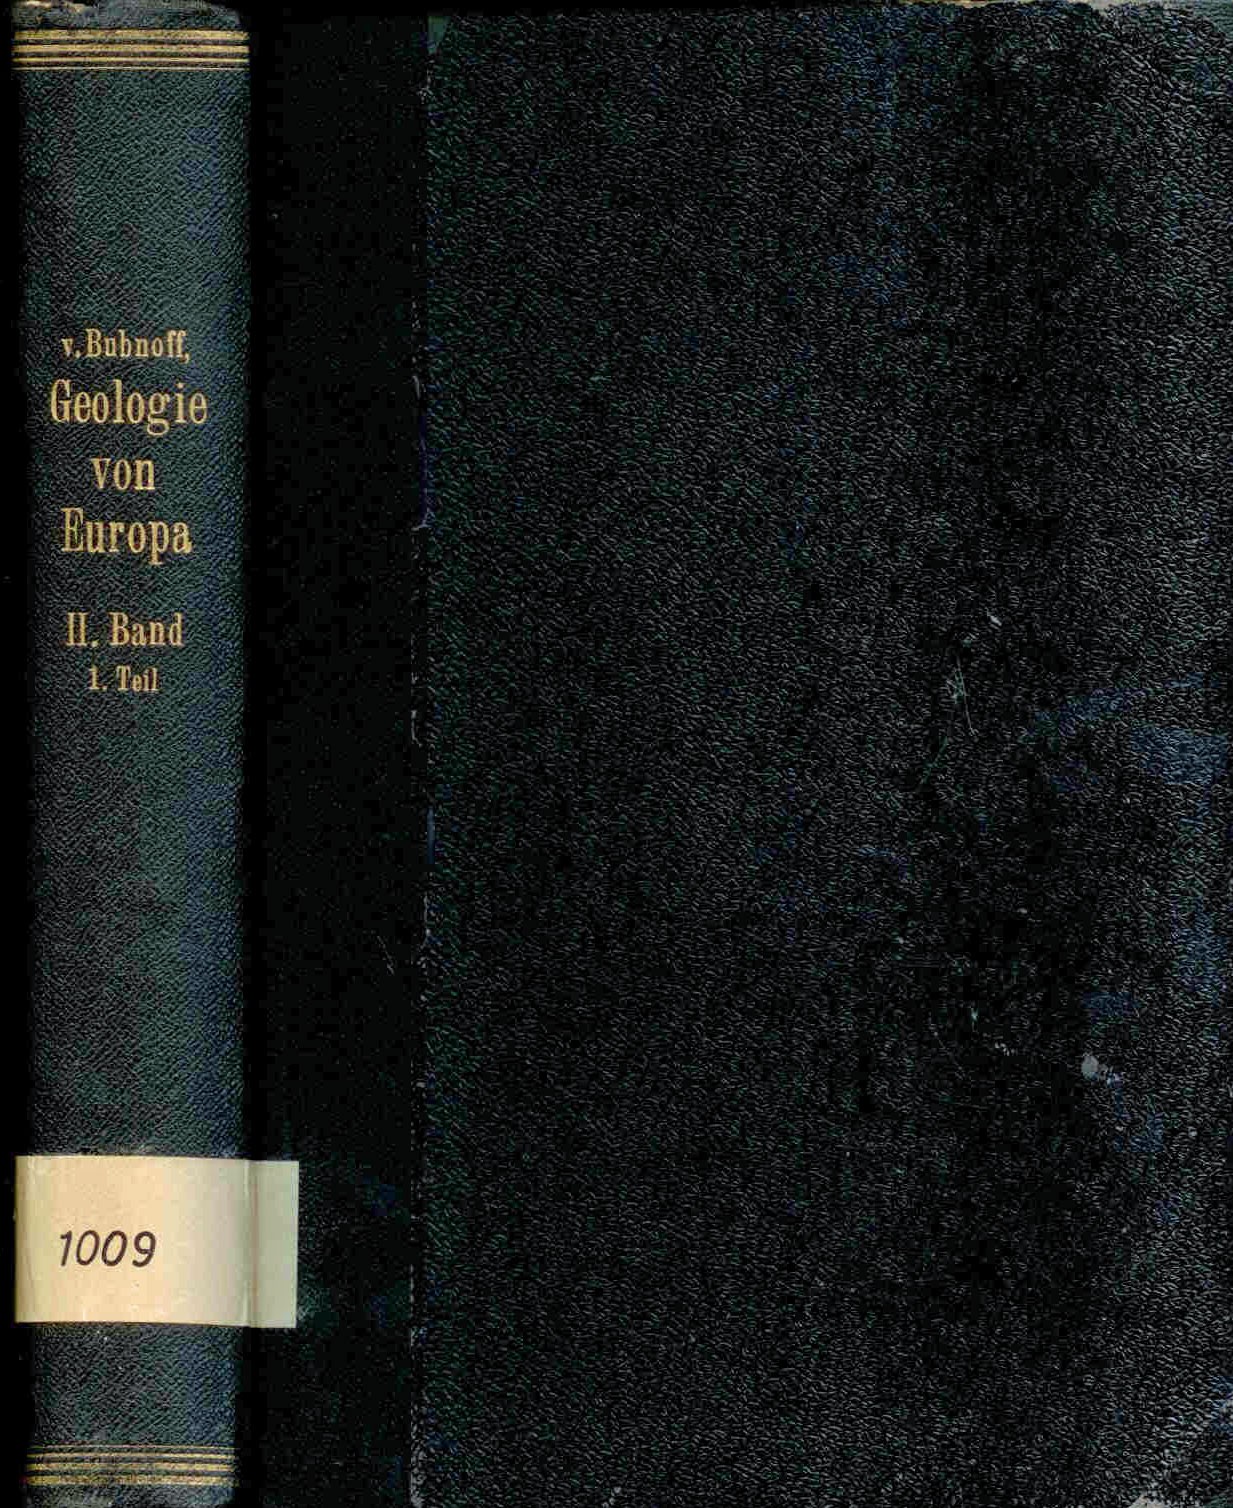 Bubnoff, S.: Geologie von Europa. Zweiter Band, Erster Teil. 